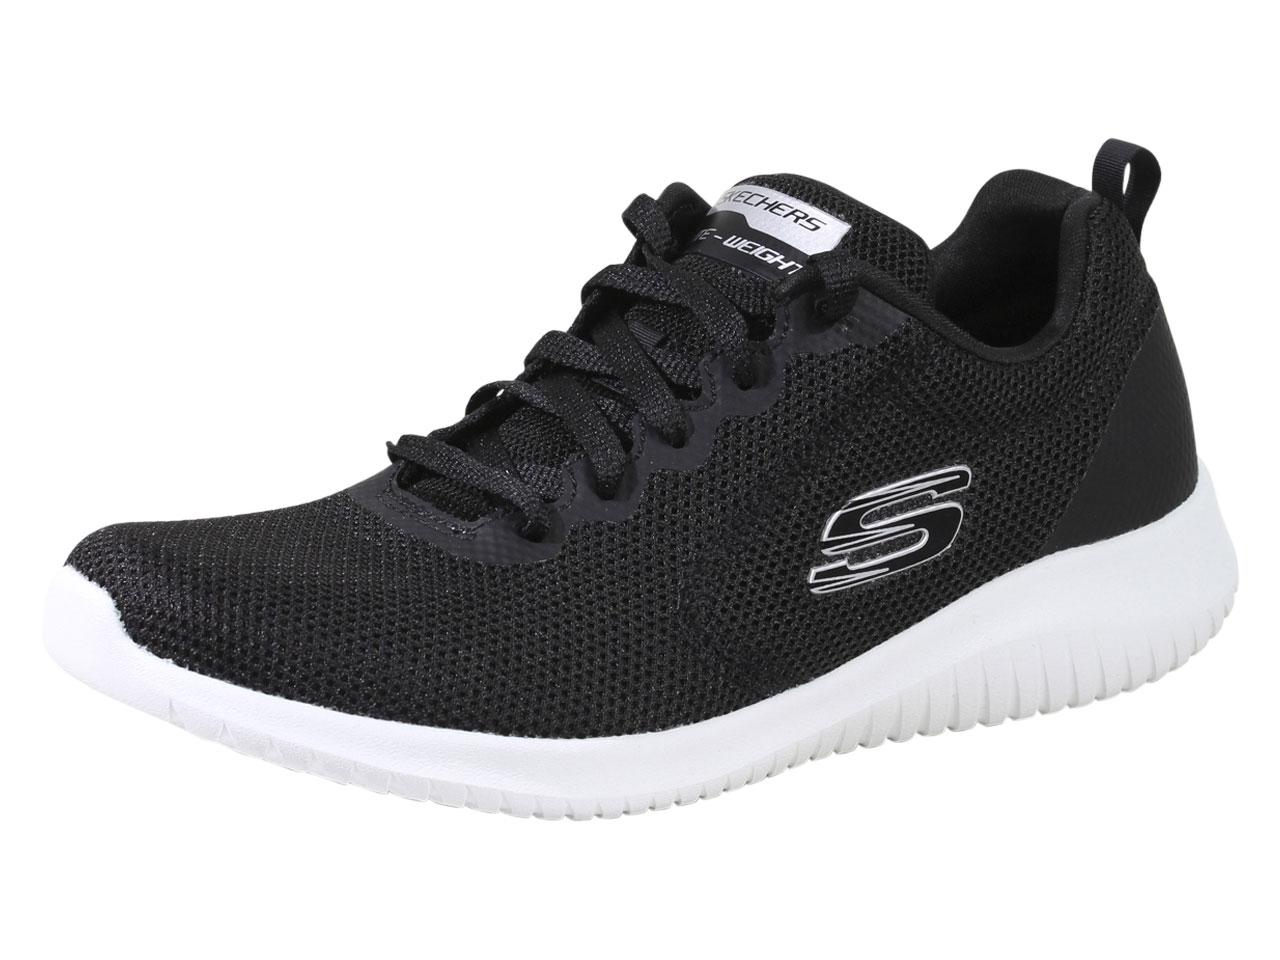 Skechers Women's Ultra Flex Free Spirits Memory Foam Sneakers Shoes - Black - 9.5 B(M) US